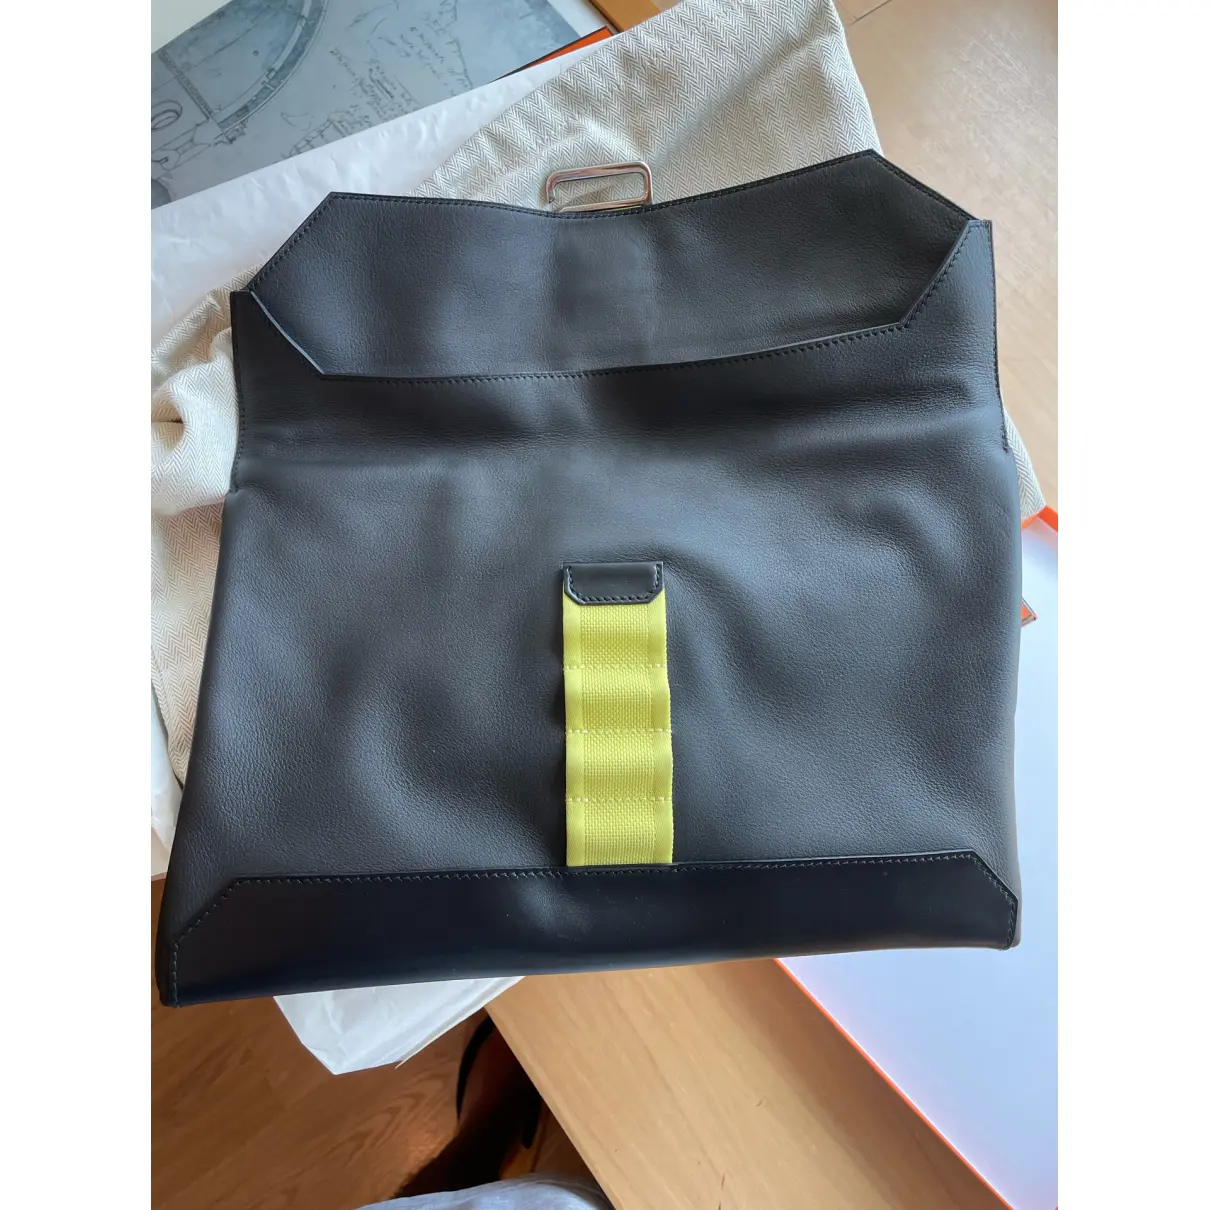 Buy Hermès Cityslide leather bag online